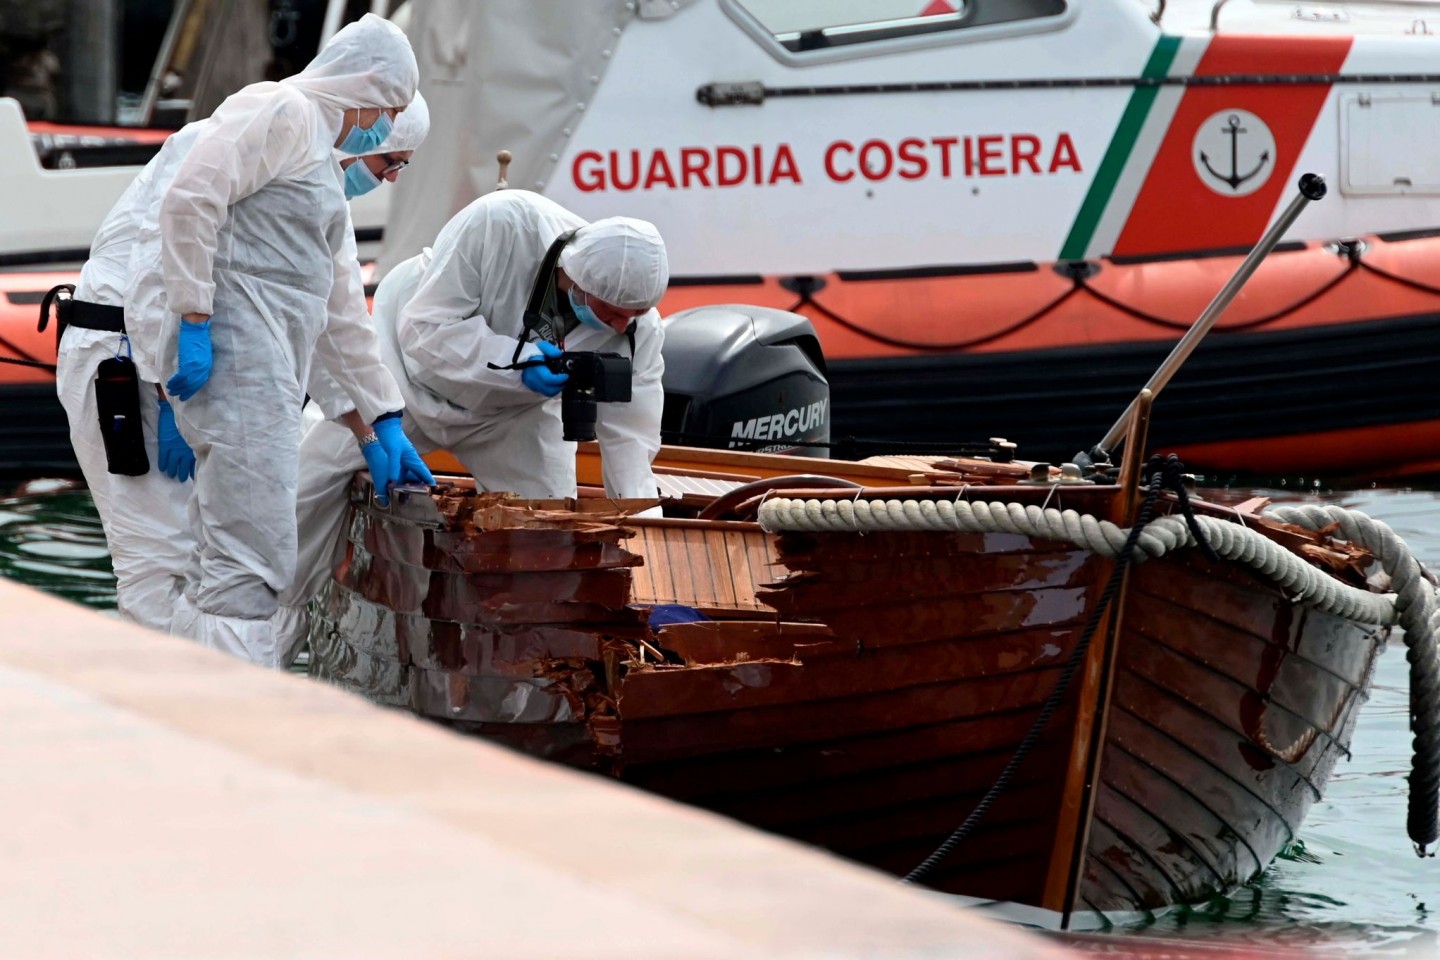 Italienische Forensiker begutachteten den Schaden an dem Boot.